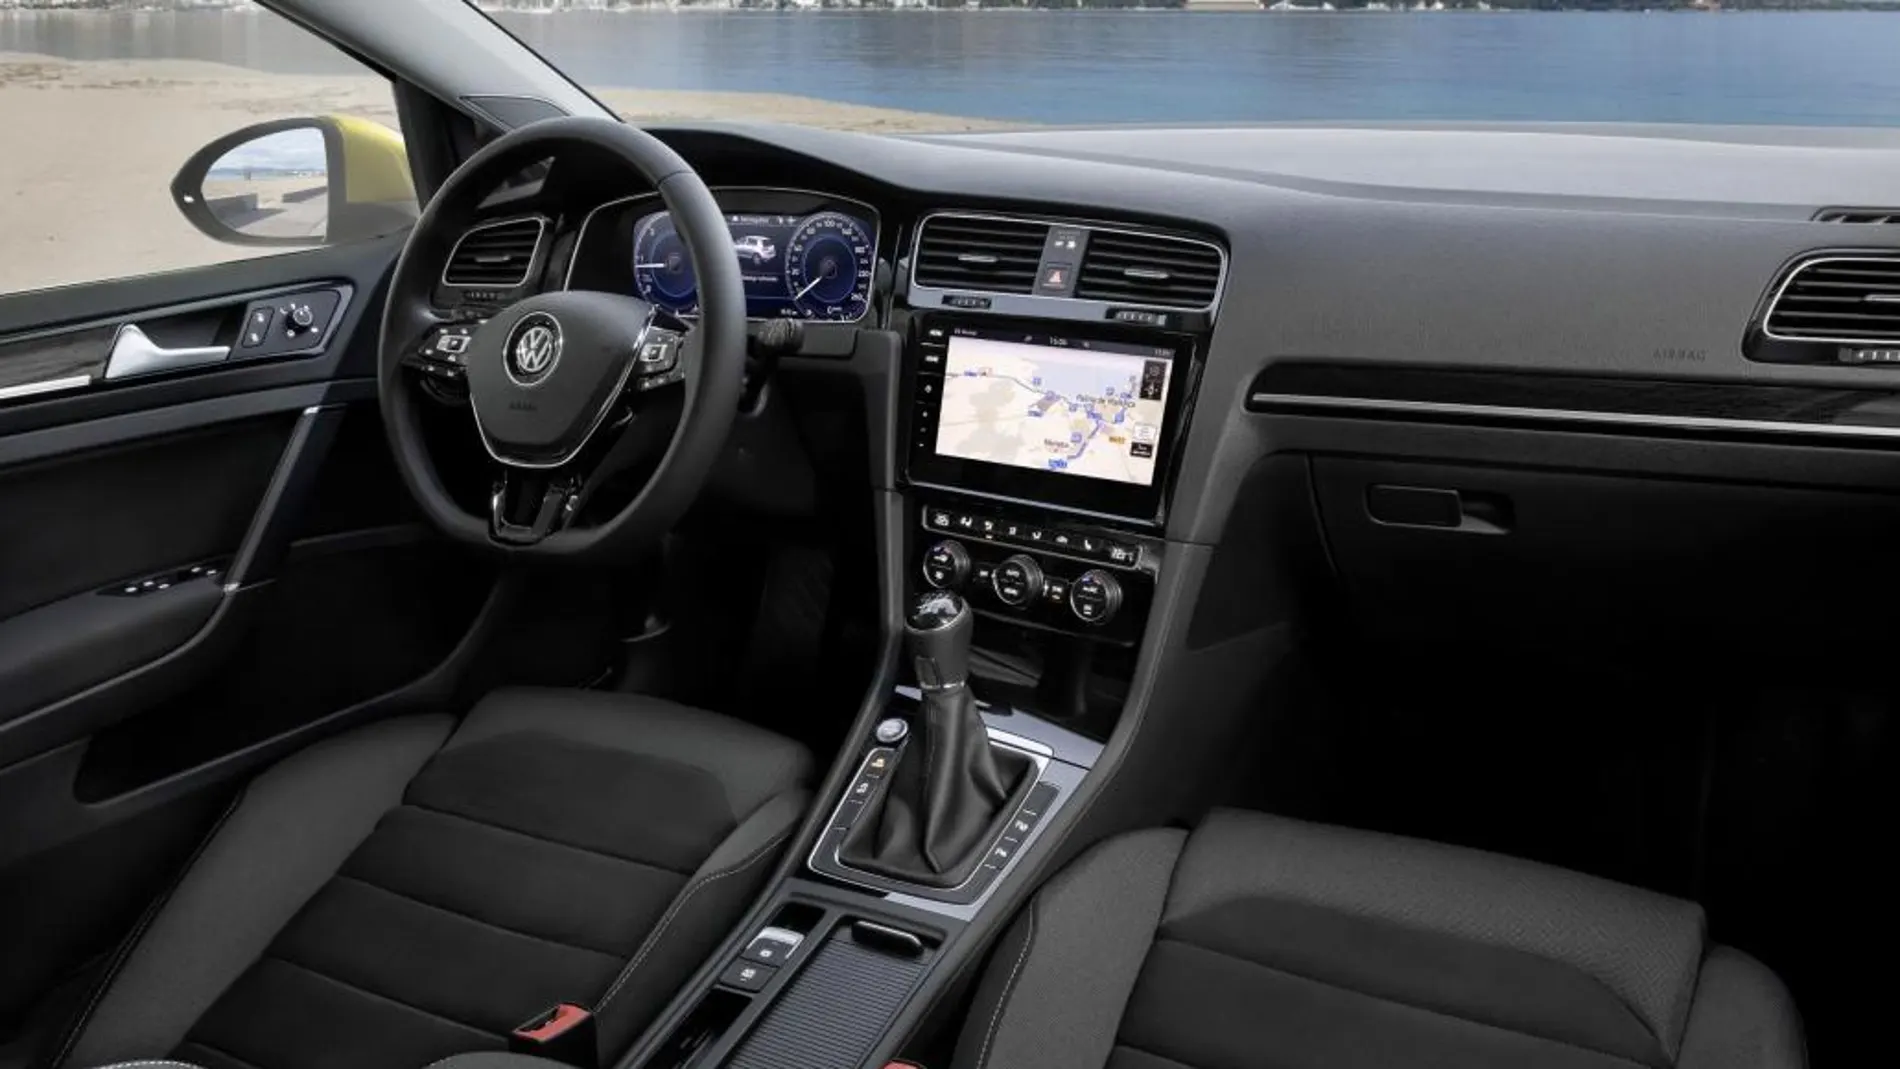 Equipa el Volkswagen Digital Cockpit.